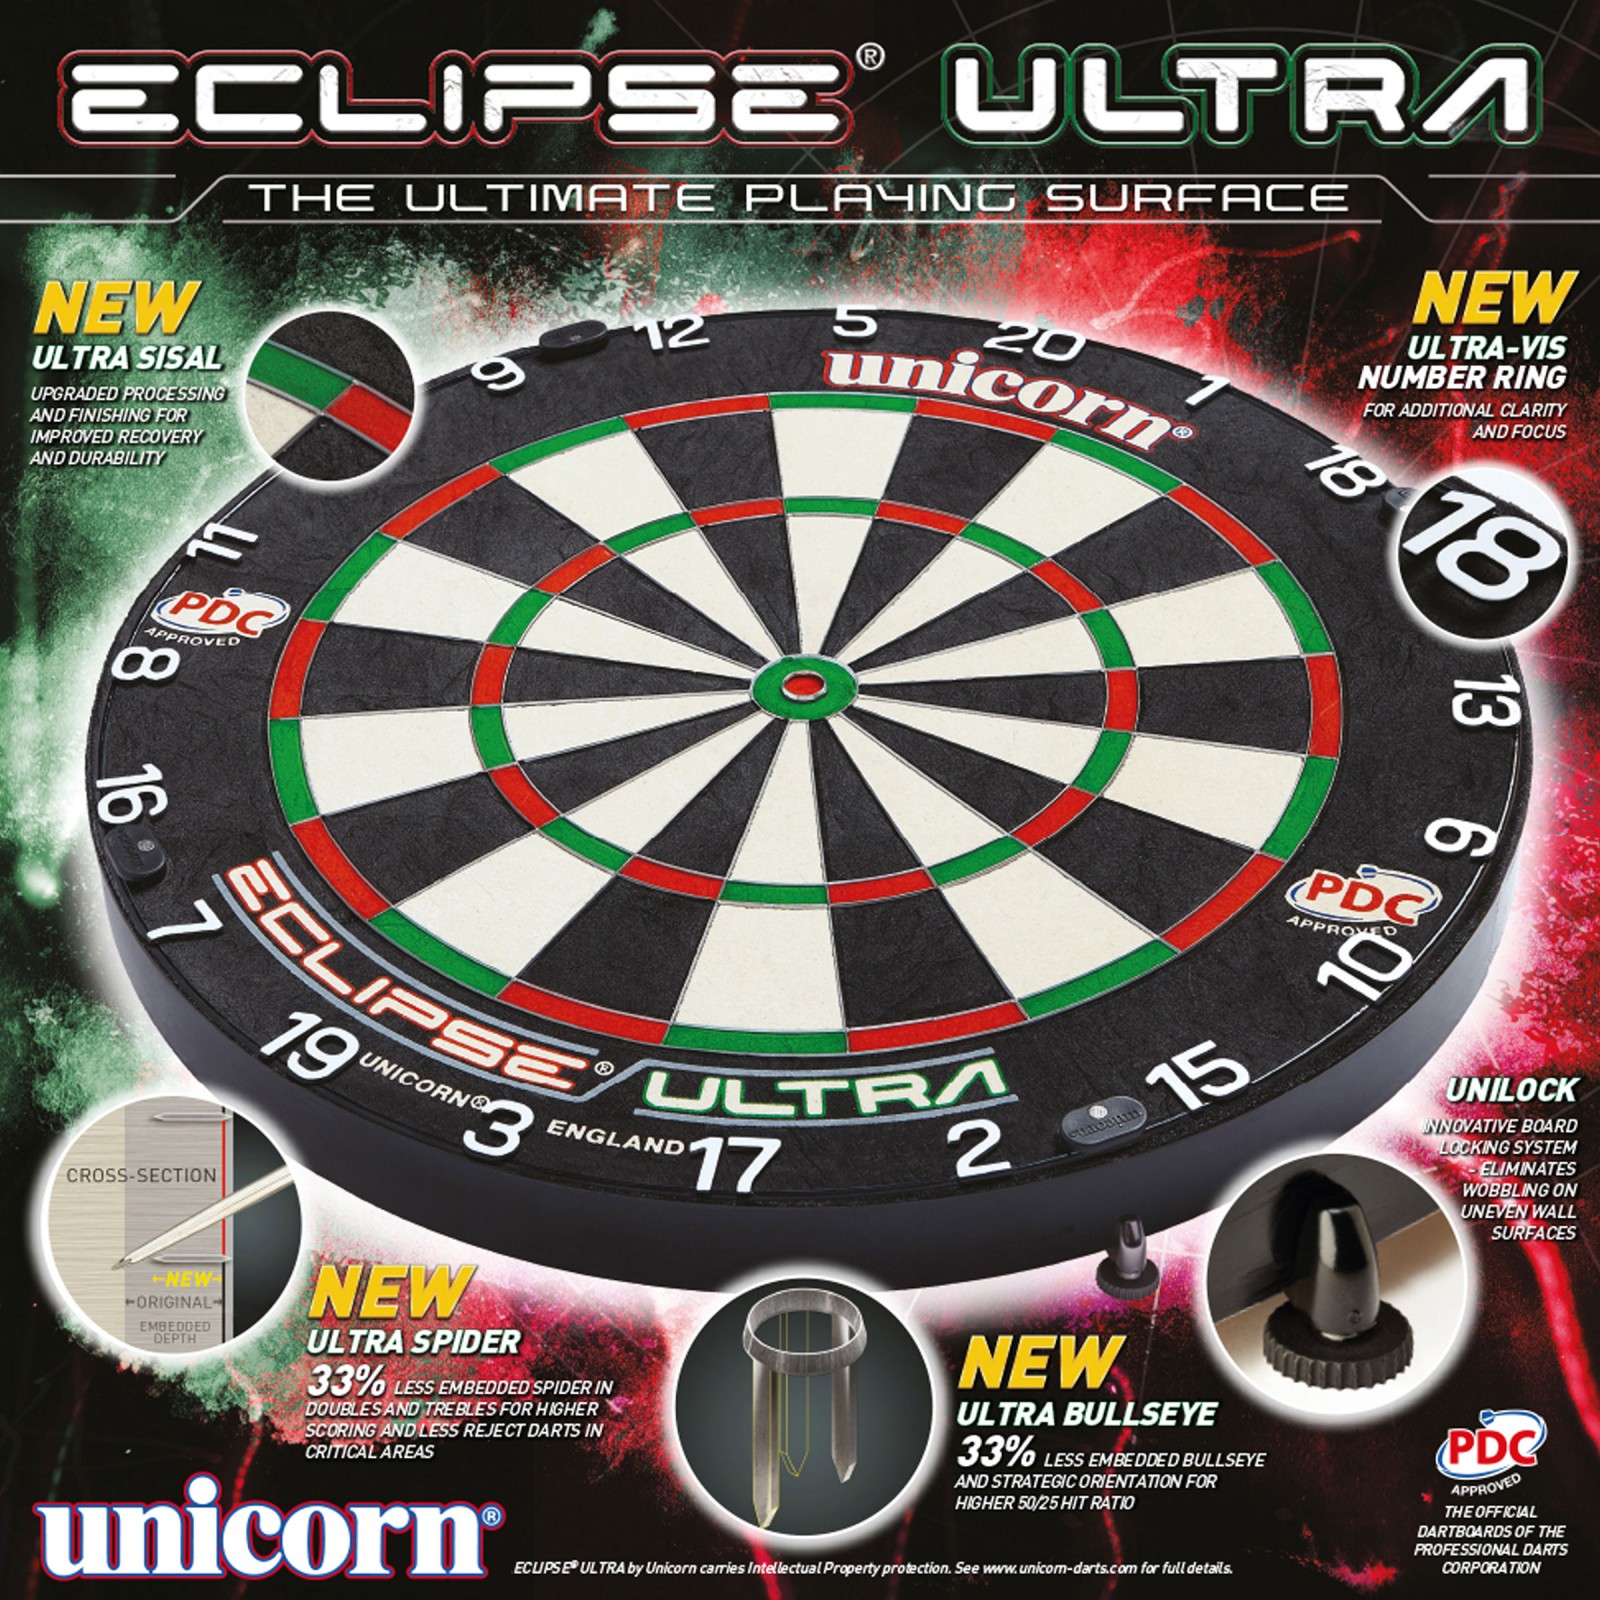 Heup Kwijting Kunstmatig Unicorn Eclipse Ultra - Official PDC Bristle Board - Mijn Dartshop